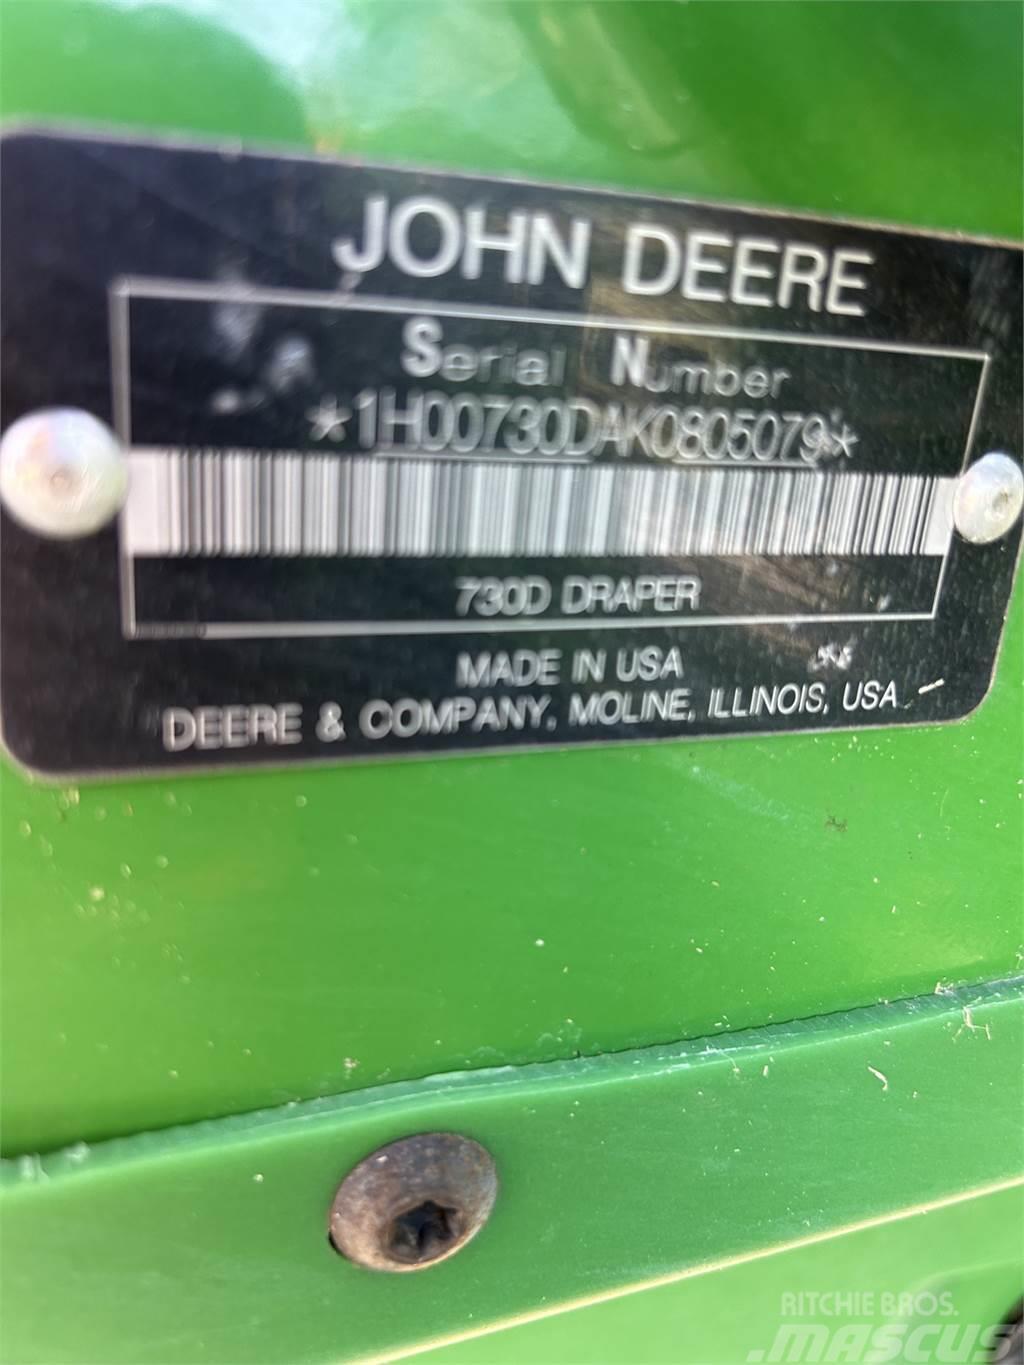 John Deere 730D Tilbehør til mejetærskere